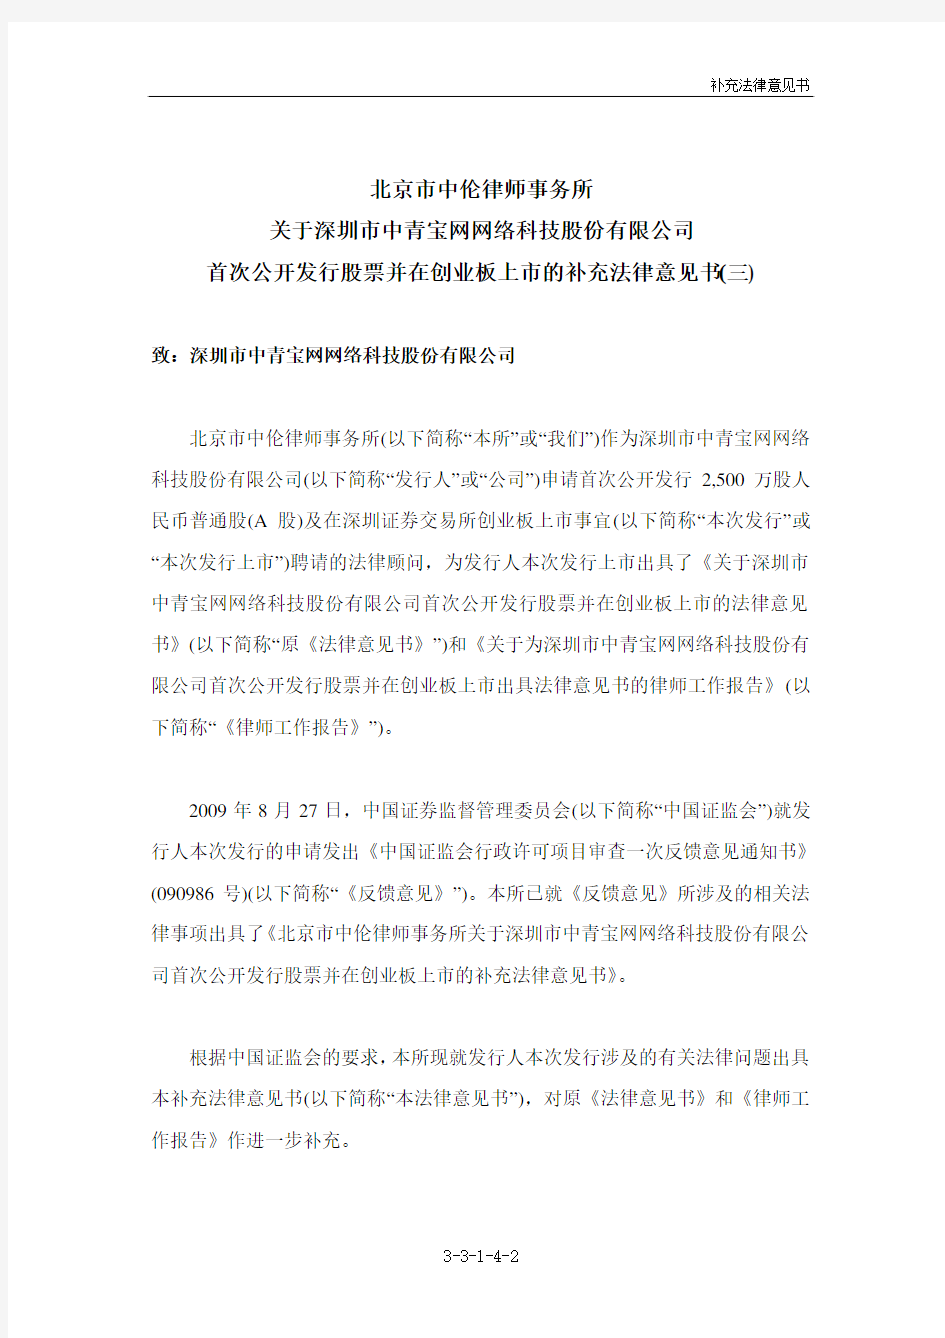 中青宝：北京市中伦律师事务所关于公司首次公开发行股票并在创业板上市的补充法律意见书(三) 2010-01-25